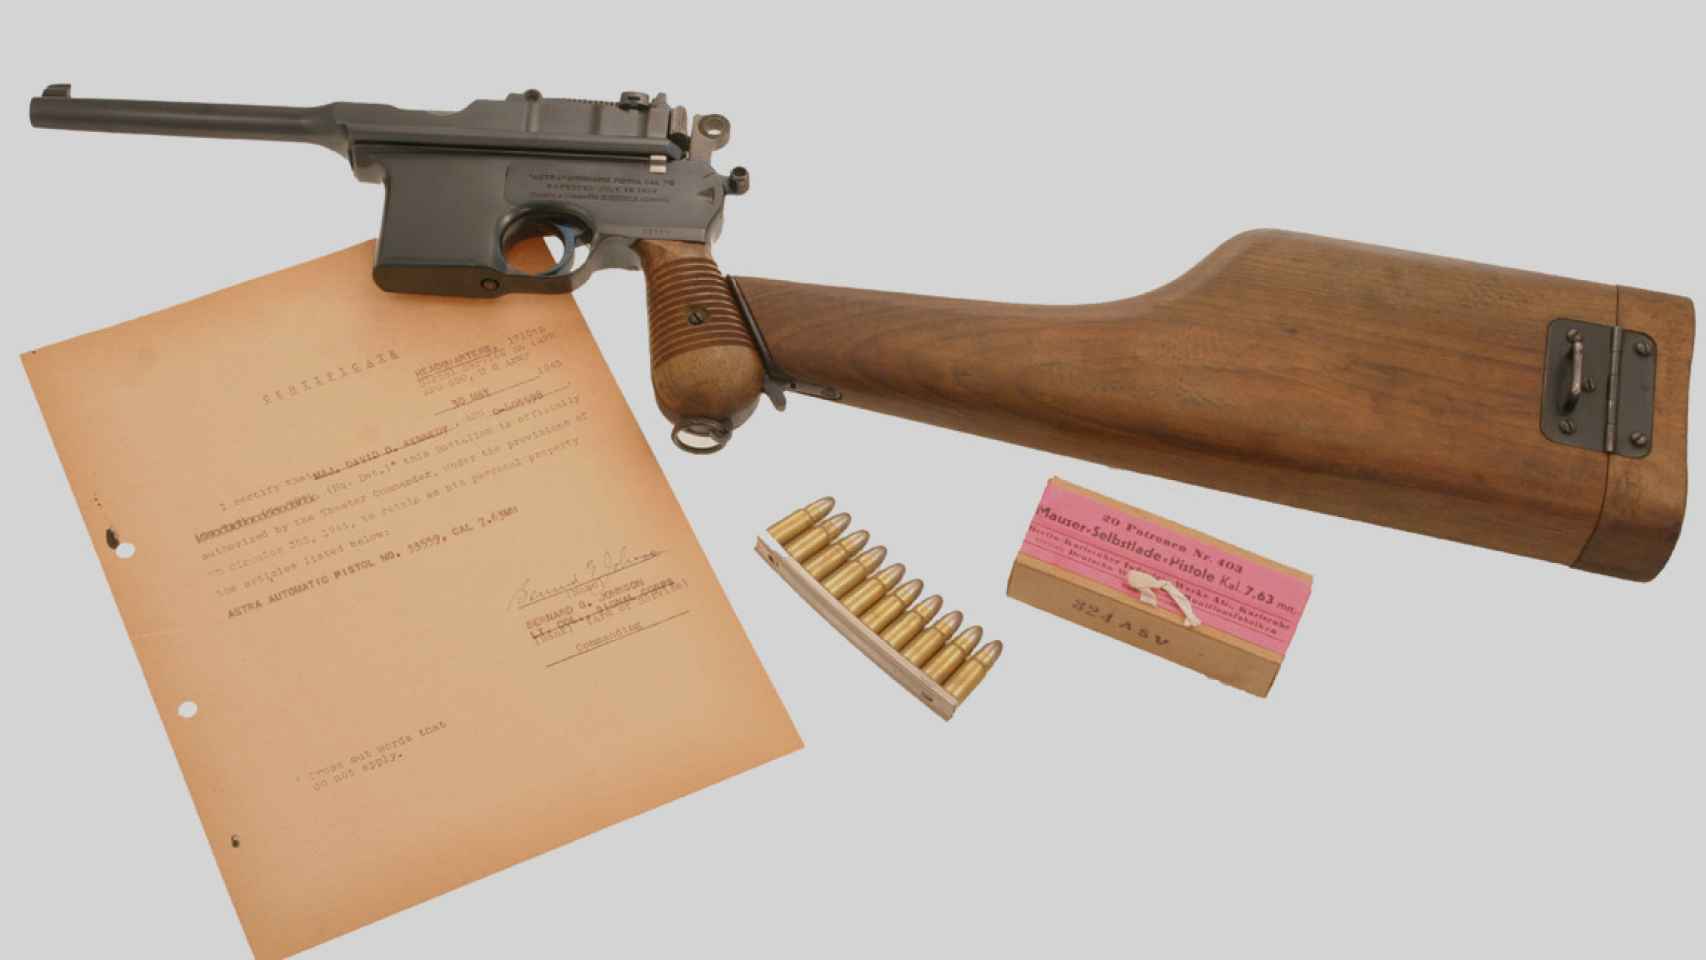 Una pistola semiautomática Astra modelo 900, copia de la alemana Mauser, del tipo que usaba El Quico.